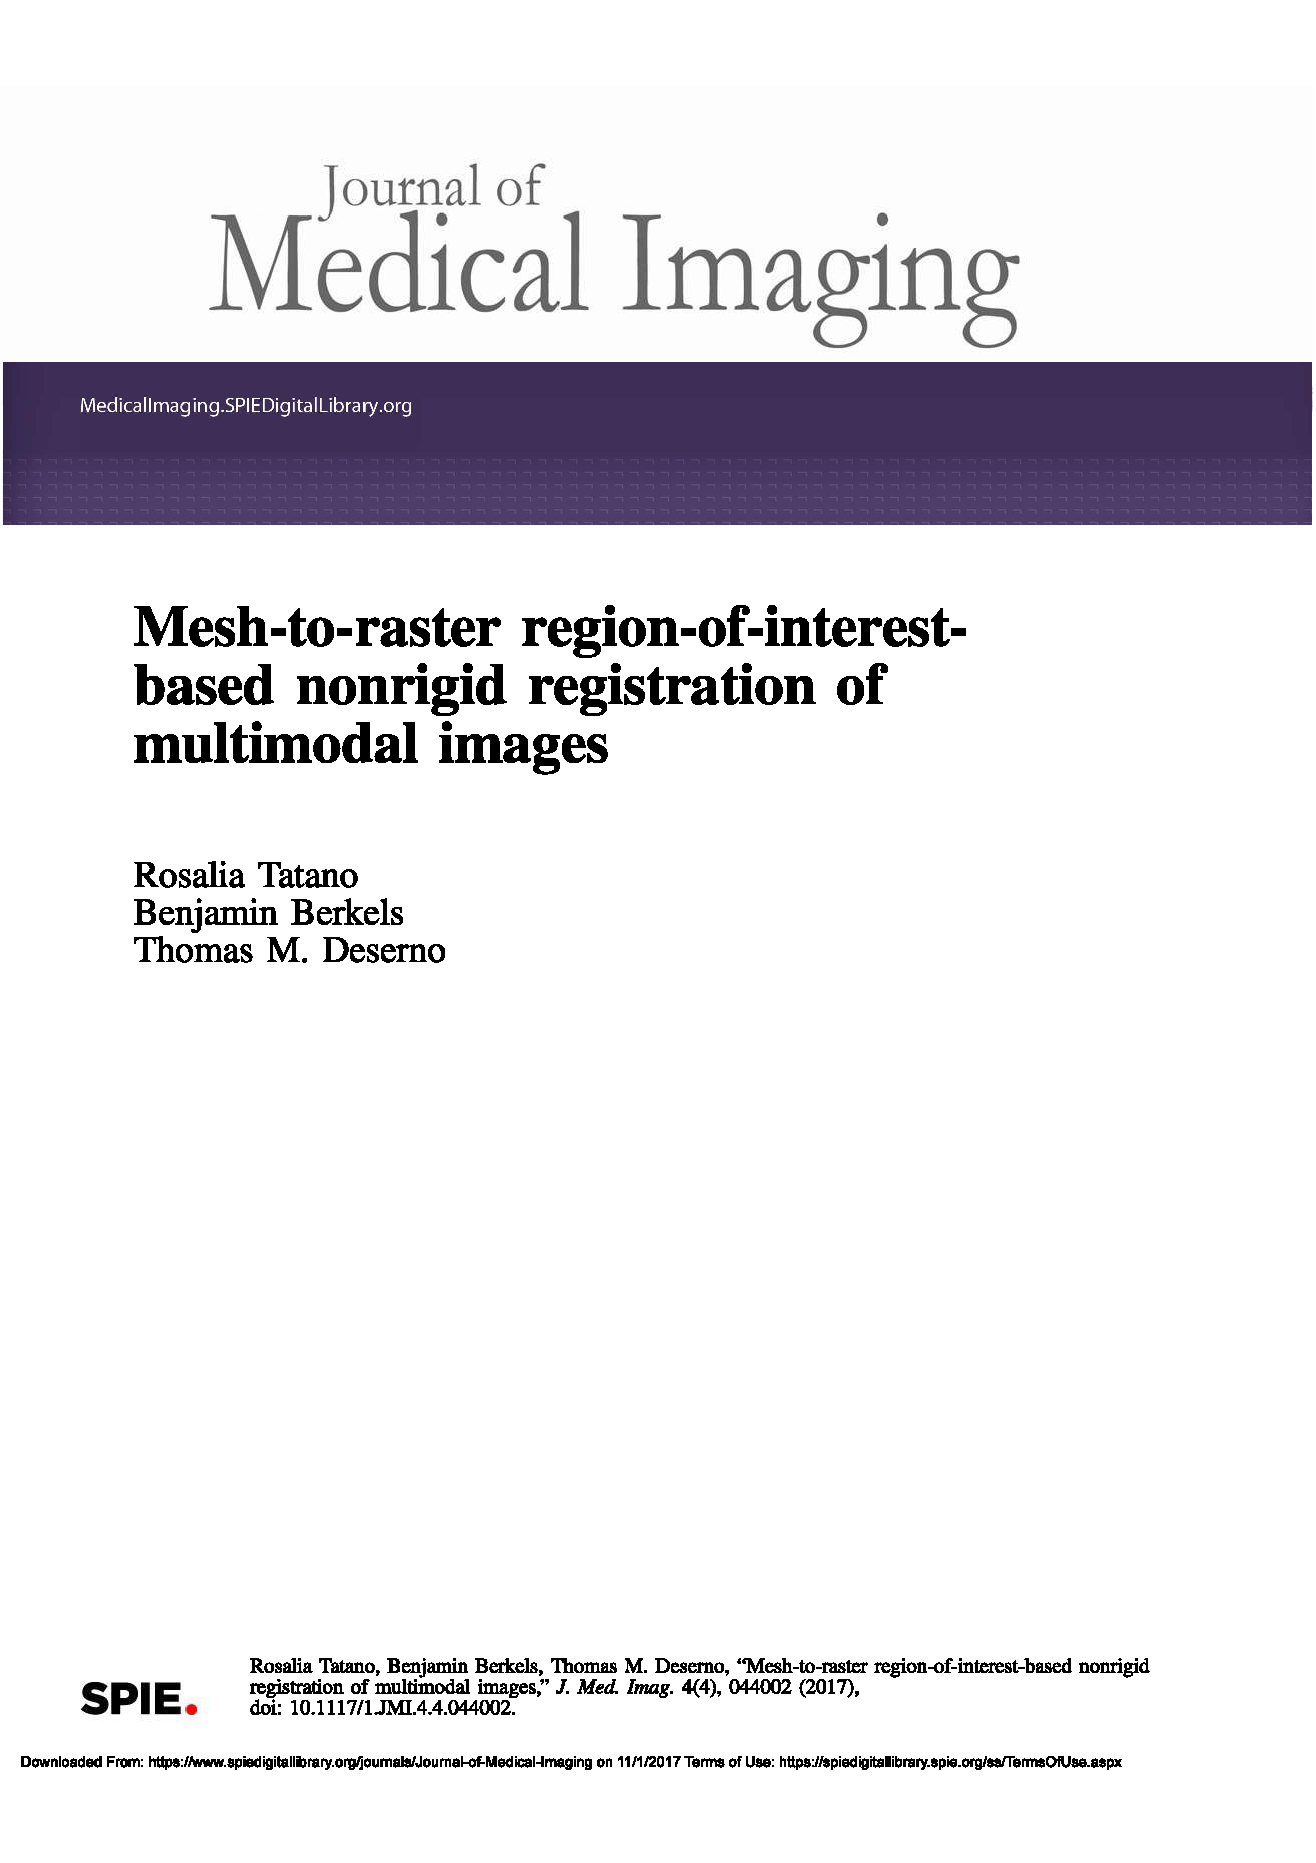 Mesh-to-raster region-of-interest-based nonrigid registration of multimodal images